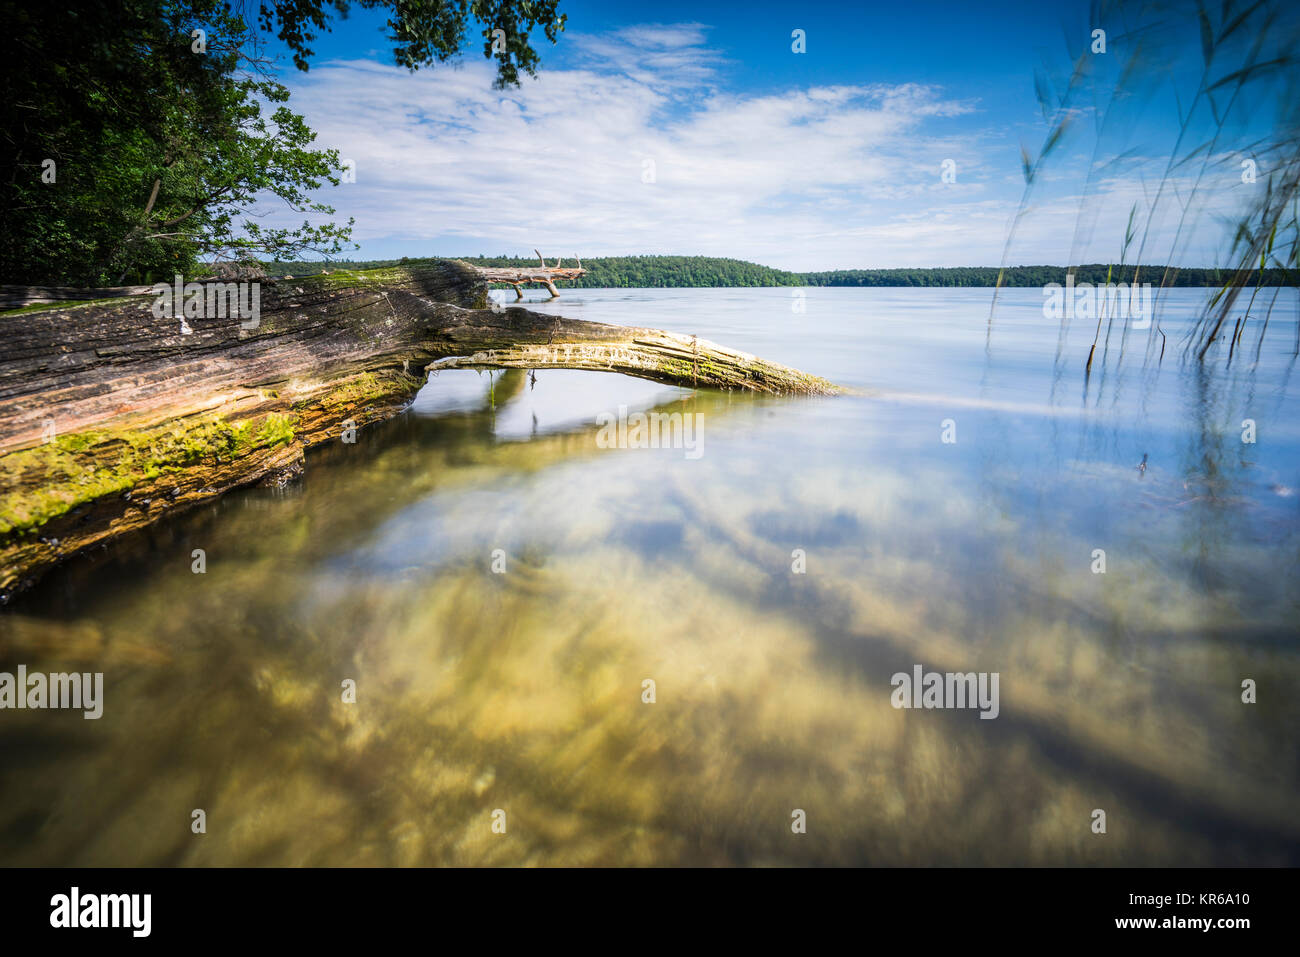 Umgestürzte Bäume am Rand eines Sees mit Reflexion des schönen Wolken im Wasser Stockfoto